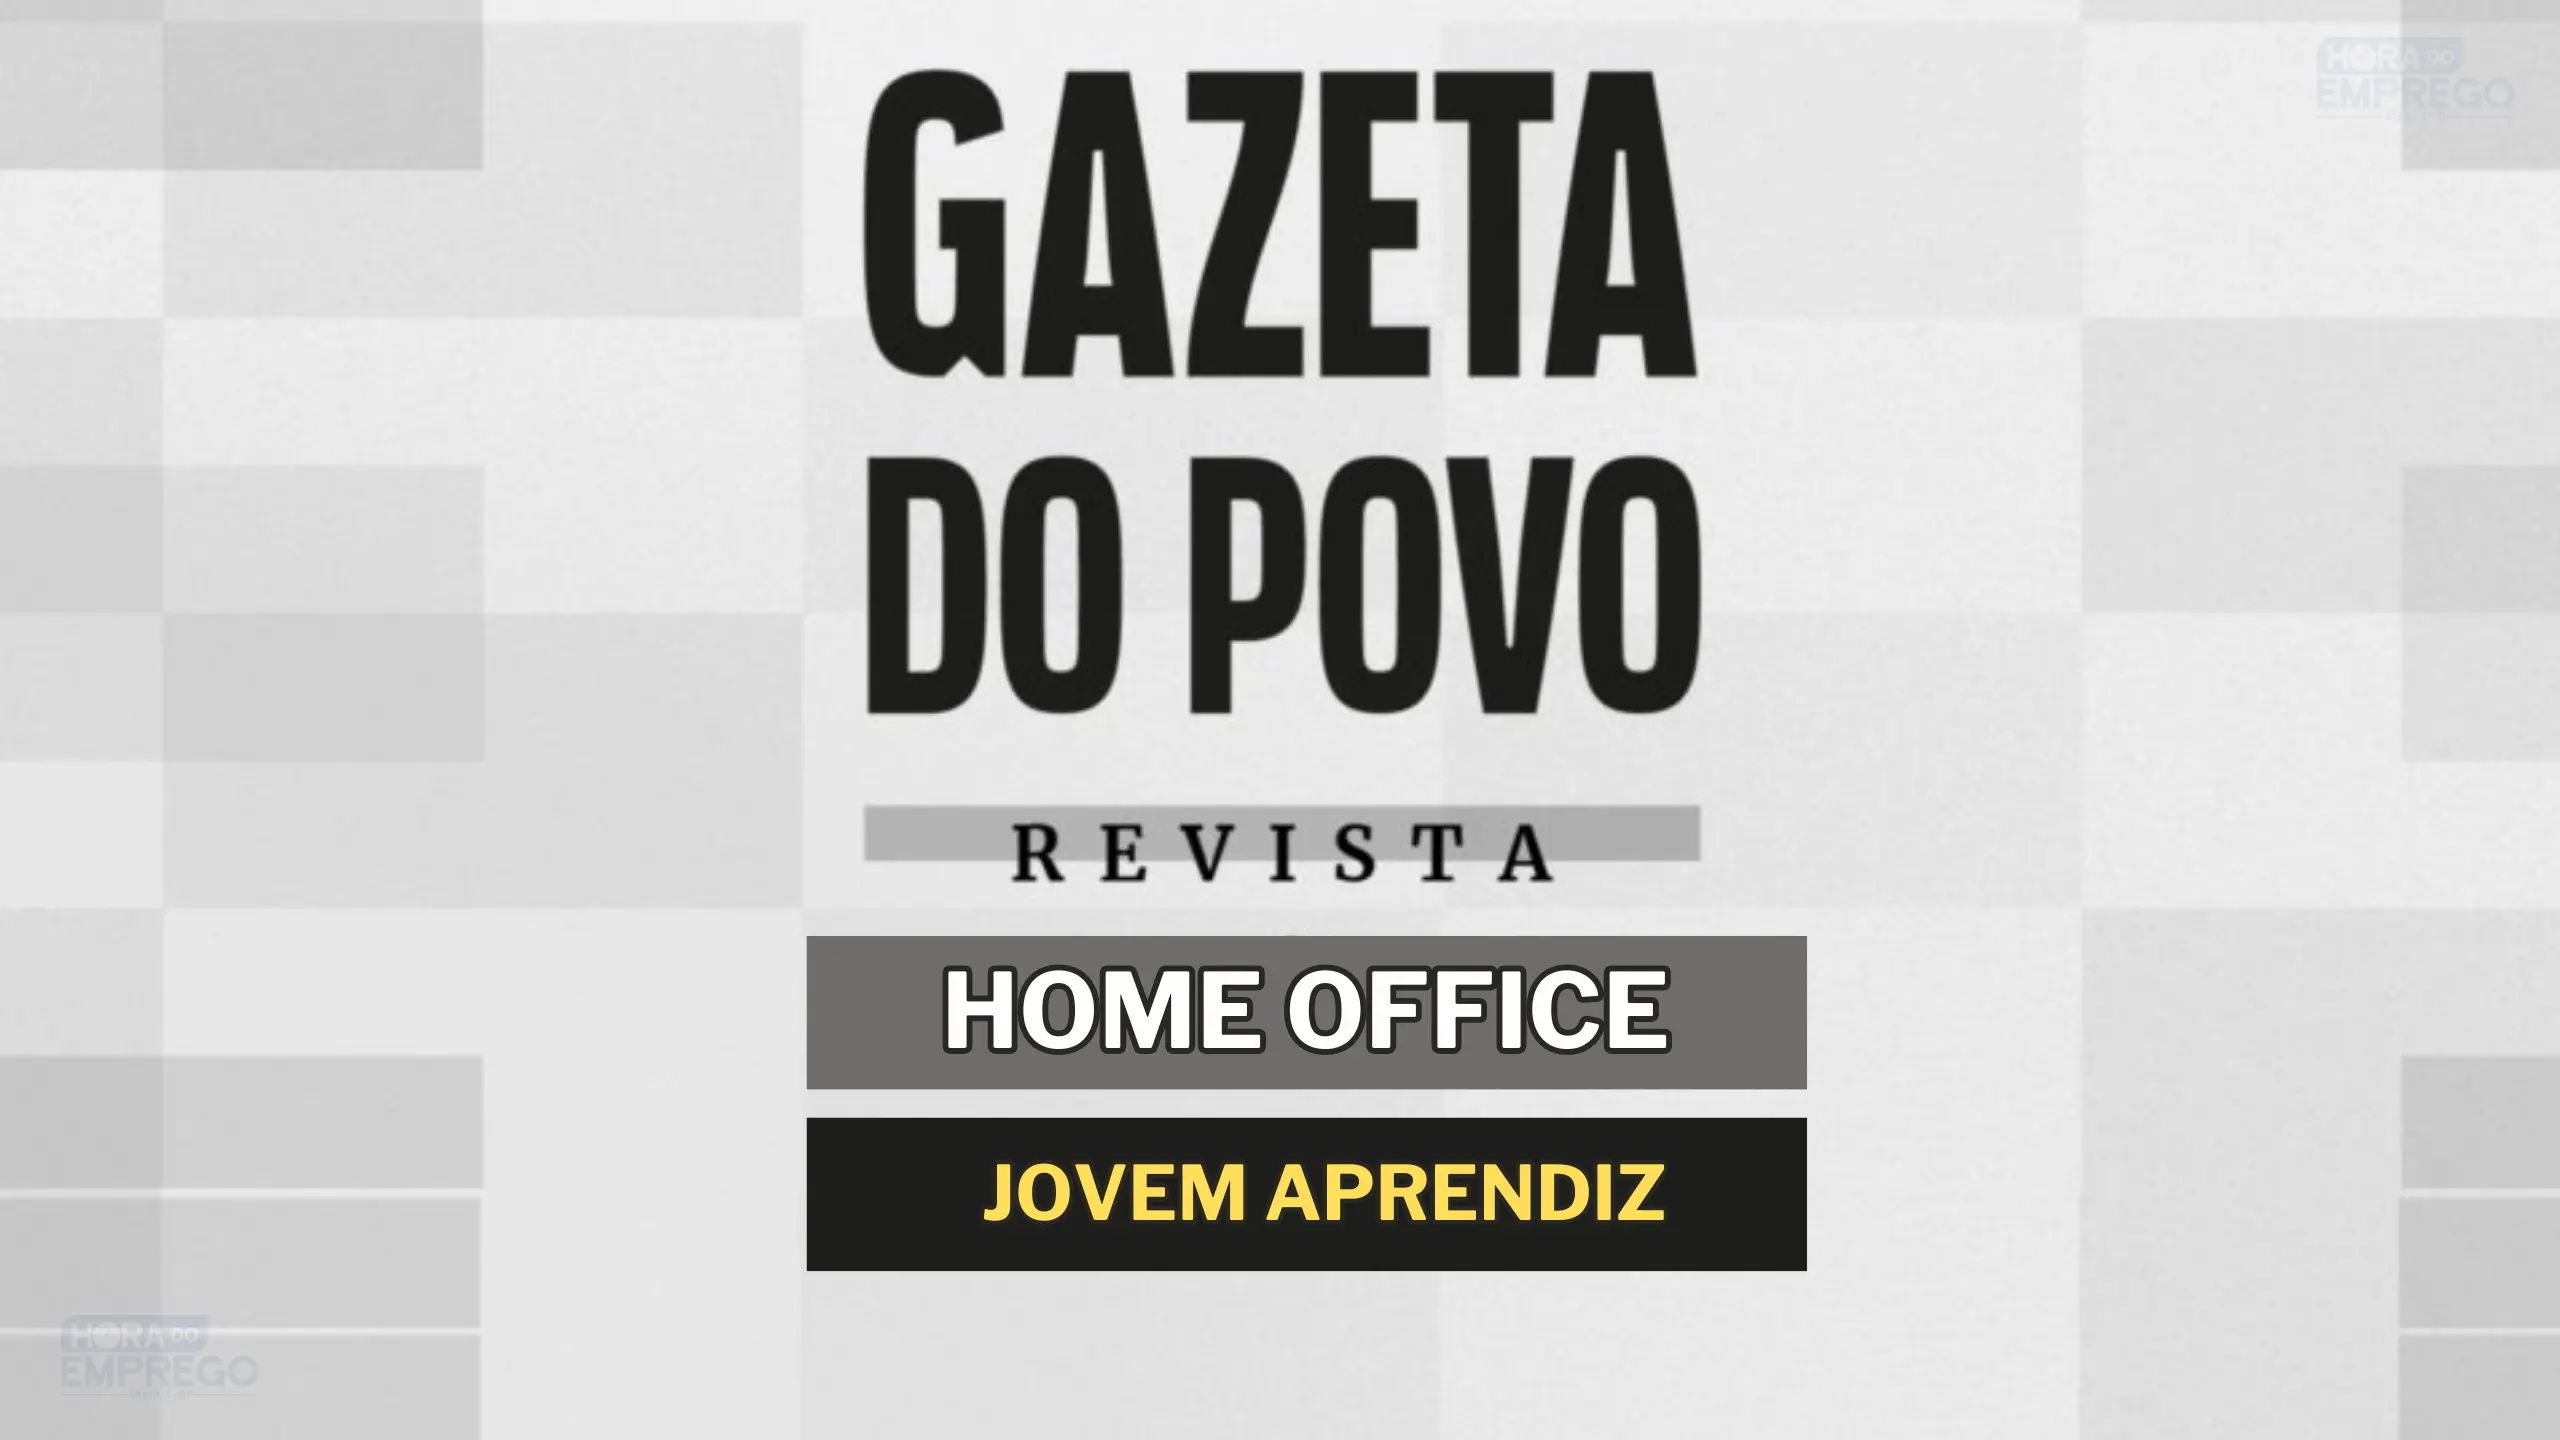 Trabalhe de Casa: Jornal Gazeta do Povo abre vagas HOME OFFICE para Aprendiz Administrativo